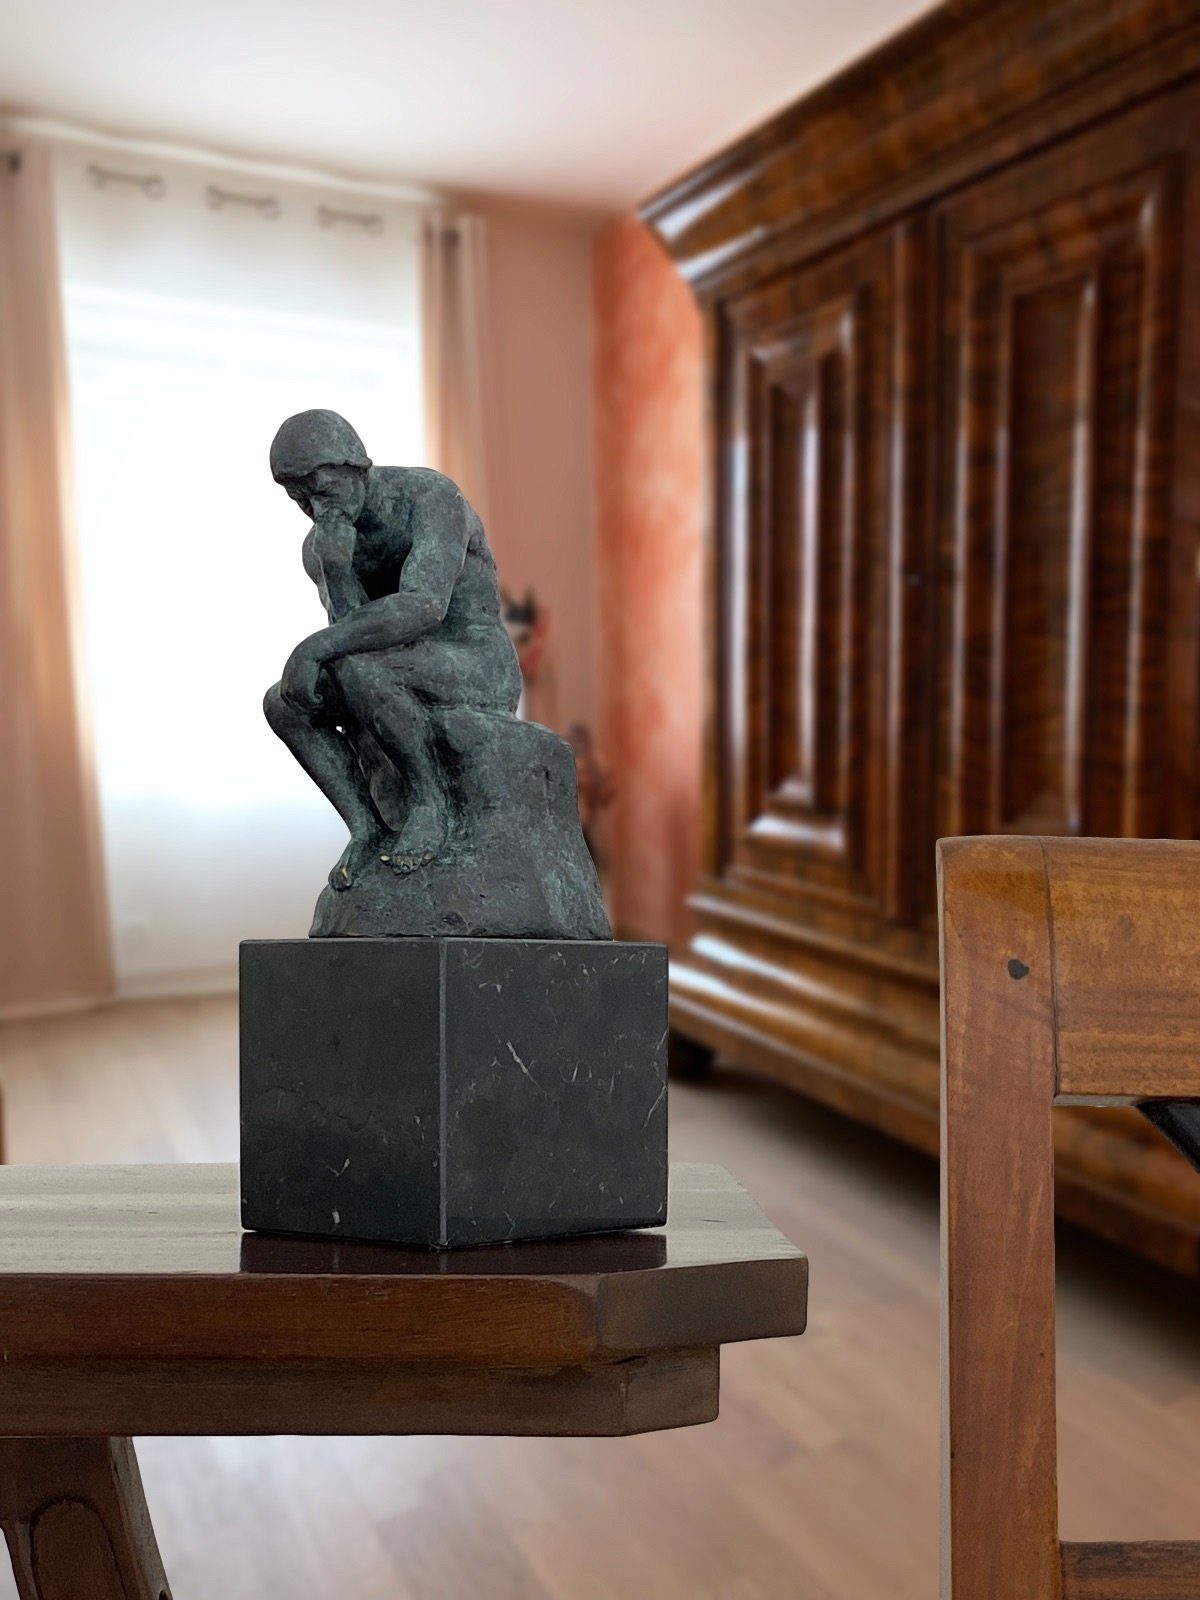 nach der Bronze Denker Bronzeskulptur Mann Aubaho Rodin Skulptur Bronzefigur coloriert